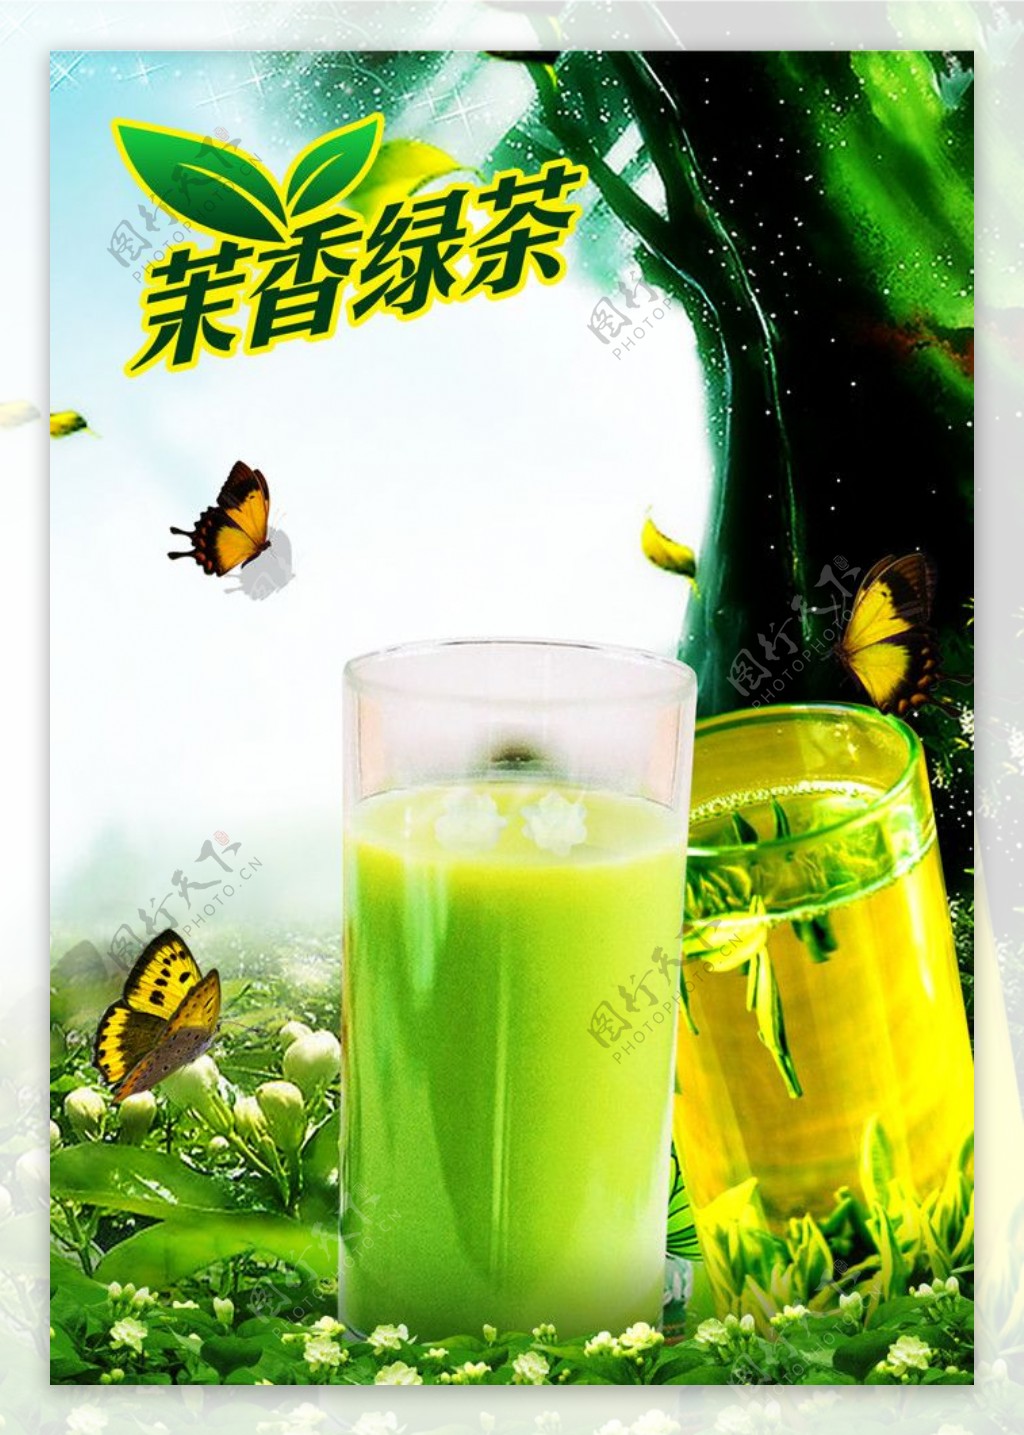 【茉莉茶園】 茉香柚茶 (250mlx6入)x4組 - 全聯線上購-隔日達平台